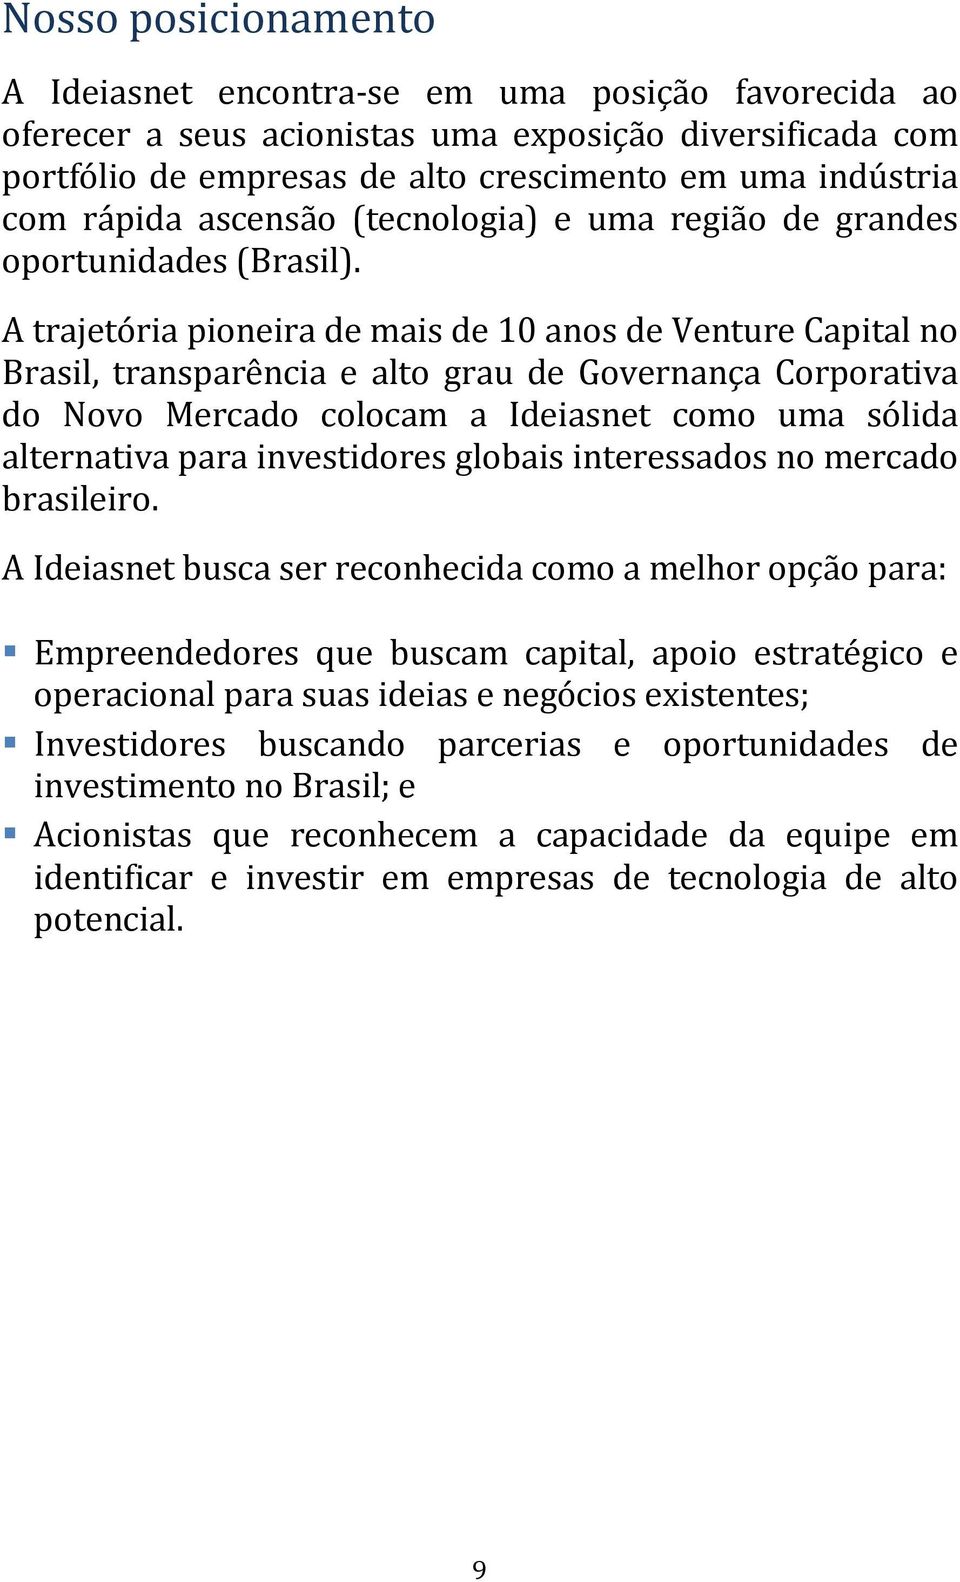 A trajetória pioneira de mais de 10 anos de Venture Capital no Brasil, transparência e alto grau de Governança Corporativa do Novo Mercado colocam a Ideiasnet como uma sólida alternativa para